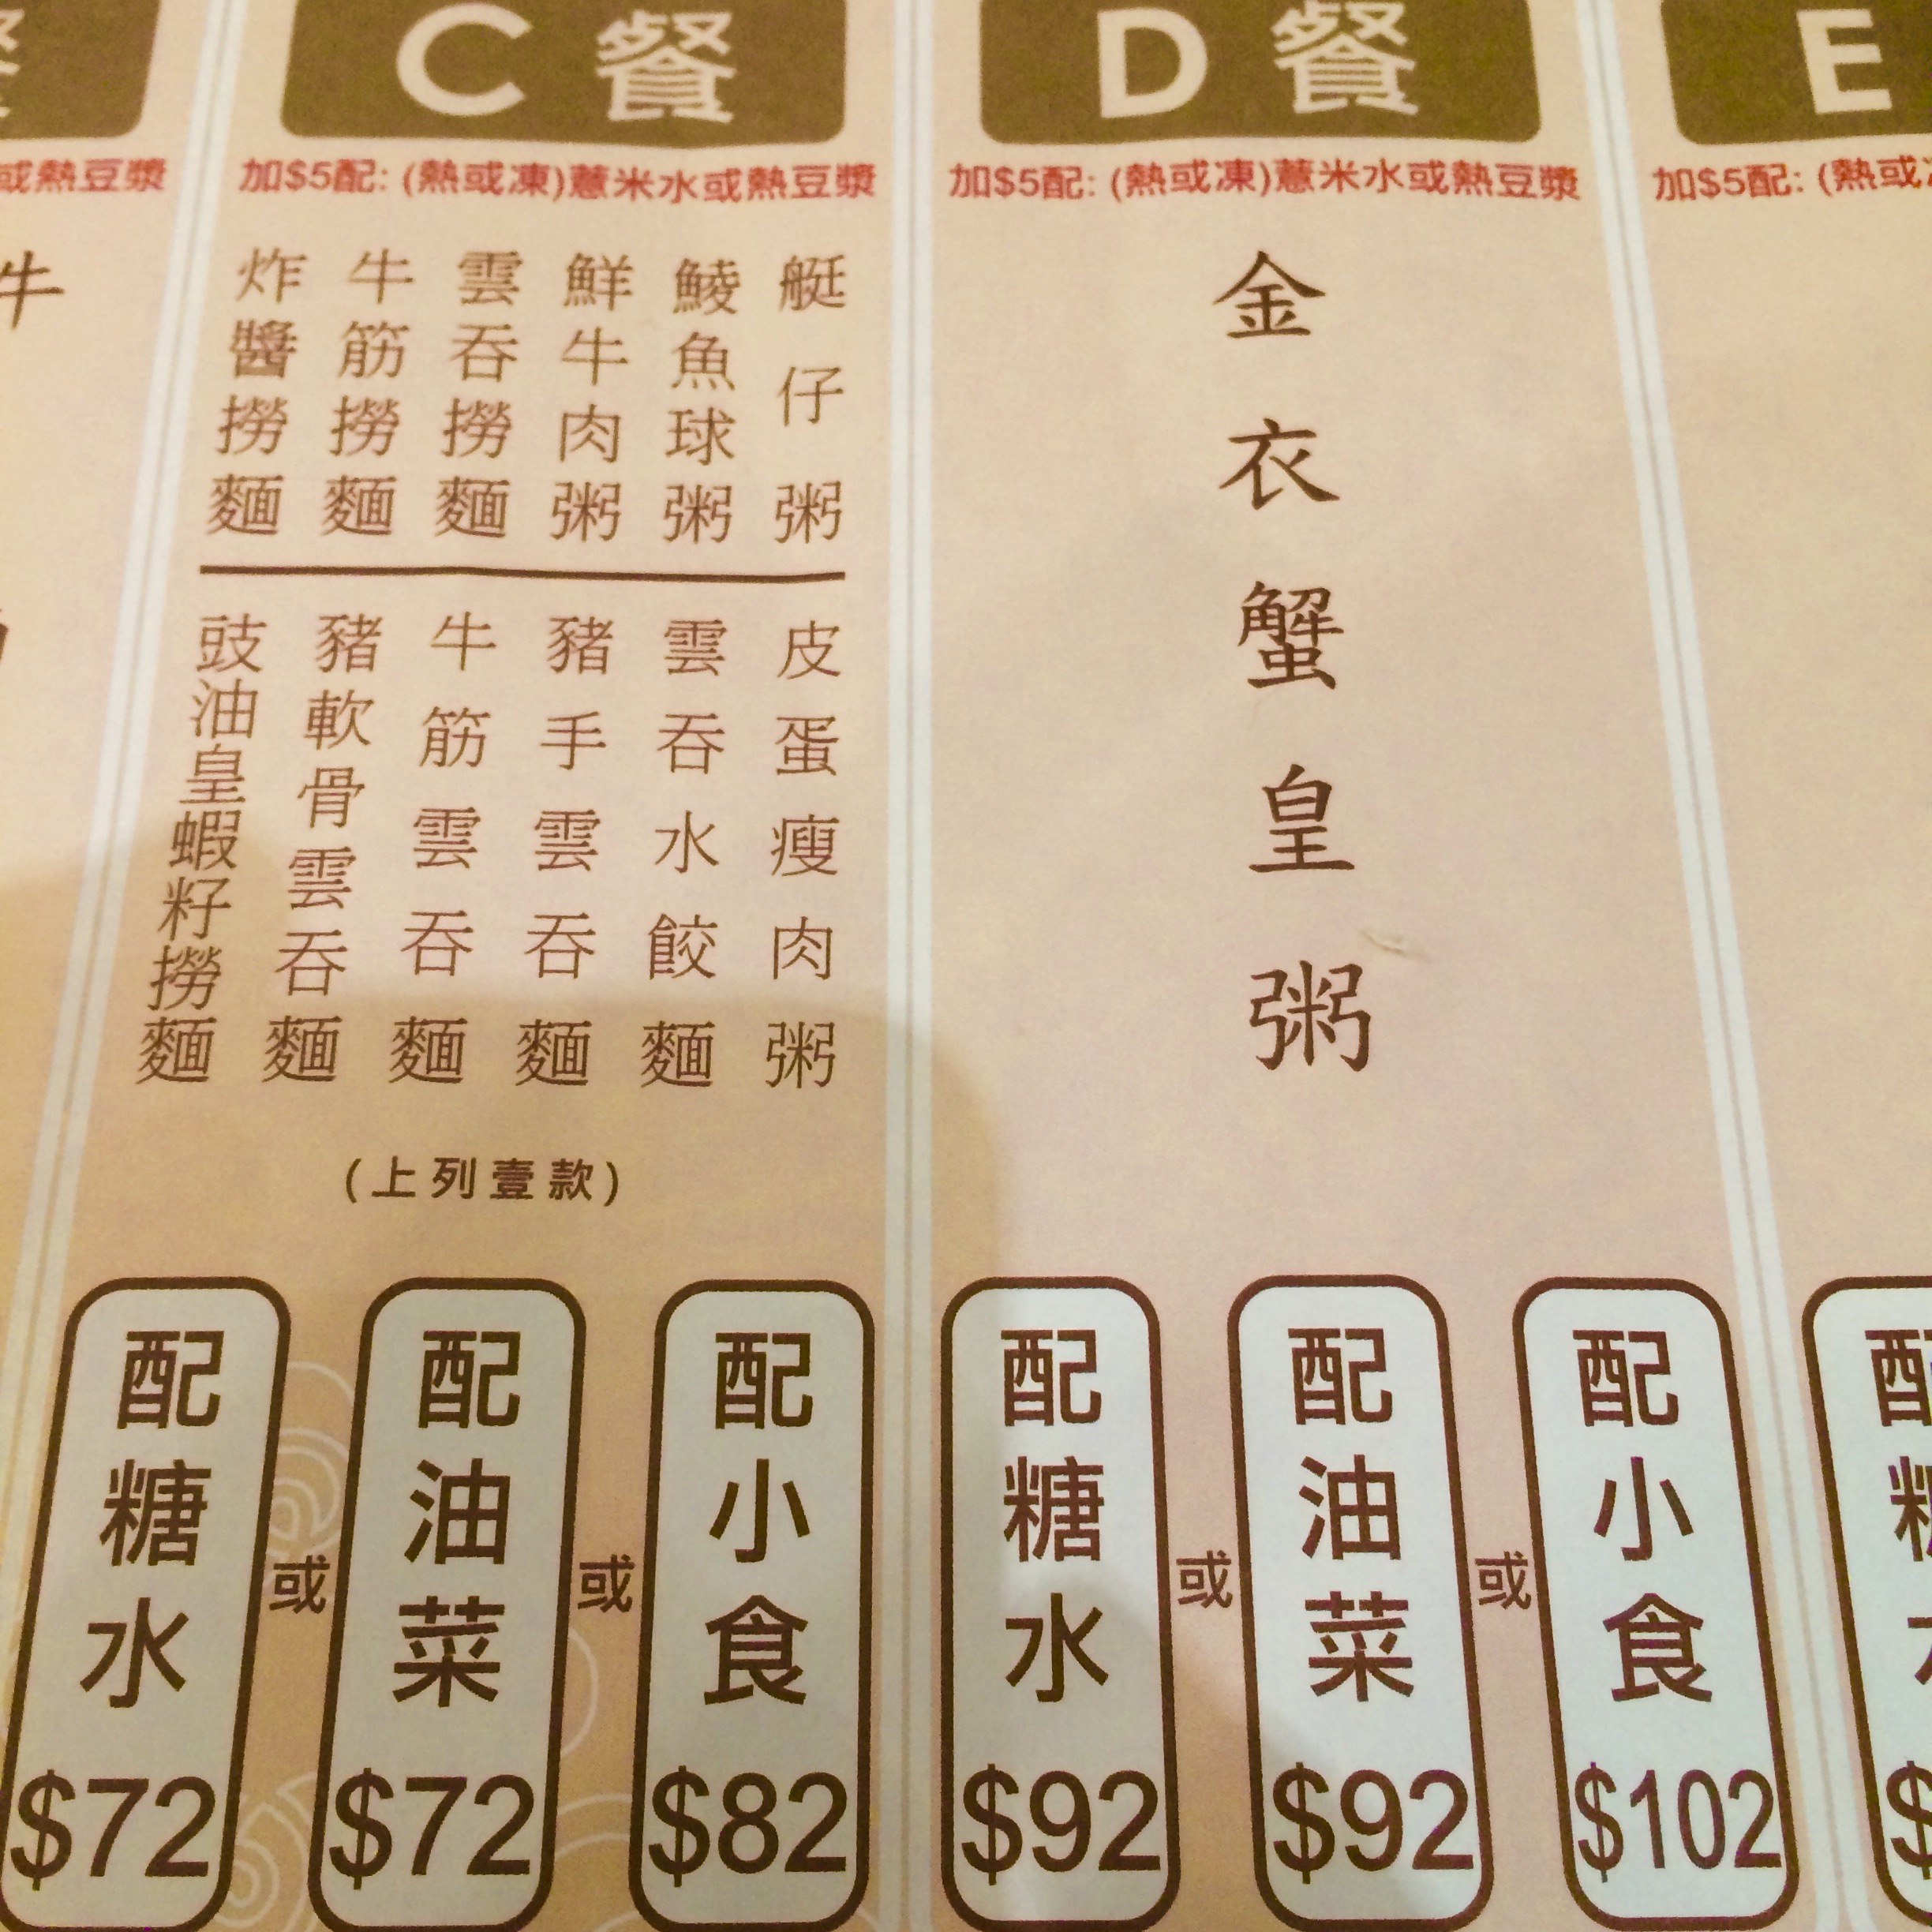 香港で人気のワンタン麺-池記雲呑麺のメニュー-3